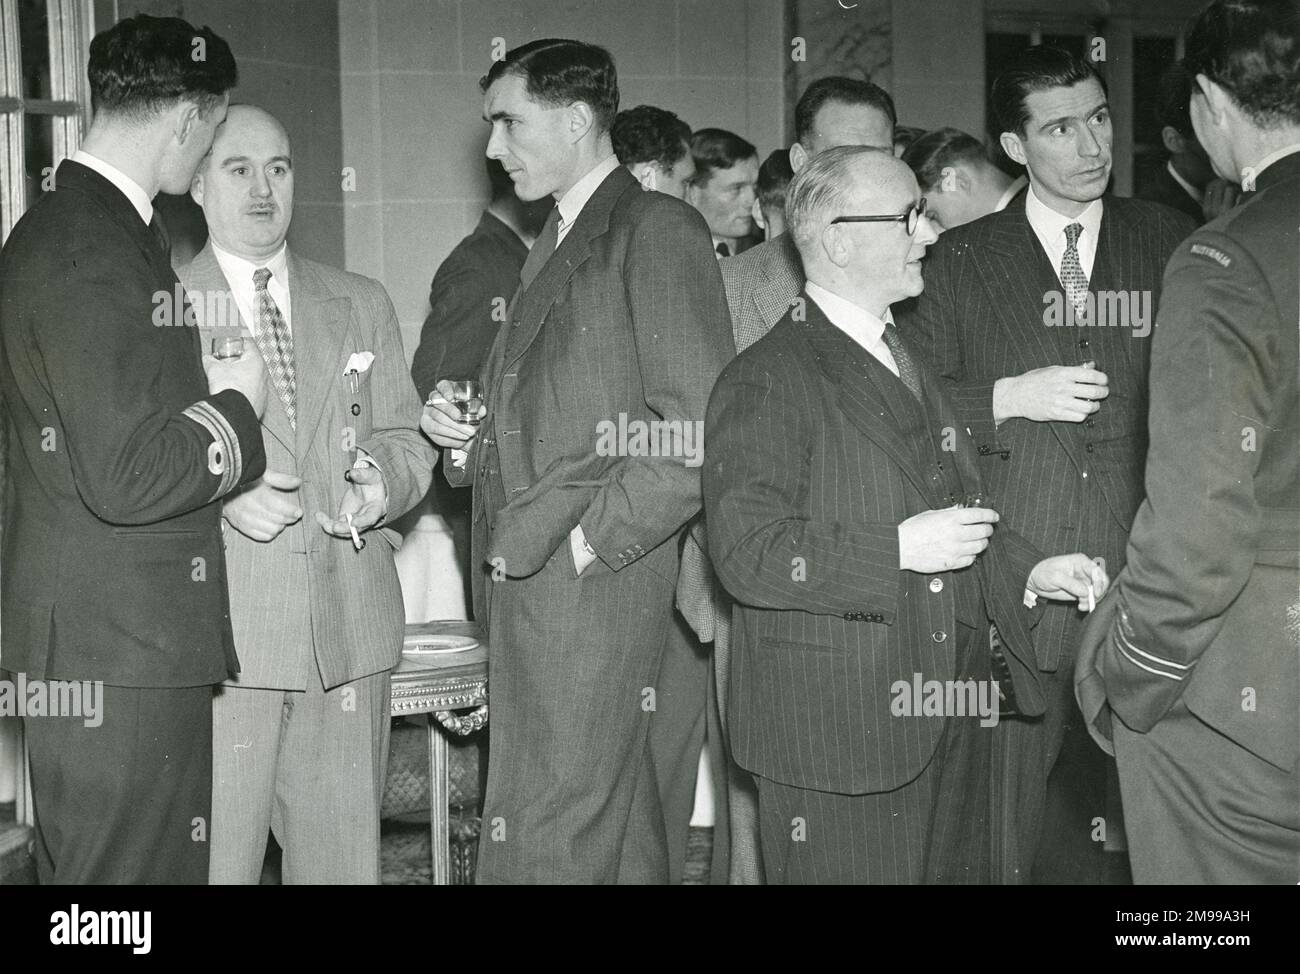 Studenten der Empire Test Pilots Schule 6 besuchten die Avro Fabriken am 15. Und 16. Dezember 1947, als sie eine Reihe von Besuchen bei den Flugzeugherstellern absolvierten. Genießen Sie einen Cocktail vor dem Abendessen von links: LT CDR G. Hawkes, Rn; F.V. Smith, CBE, General Works Manager; CDR F.M.A. Torrens-Spence, DSO, DSC, RN, OC Flying at the School; C.E. Fielding, OBE, Director; und J.A.R. Kay, Vertriebsleiter. Stockfoto